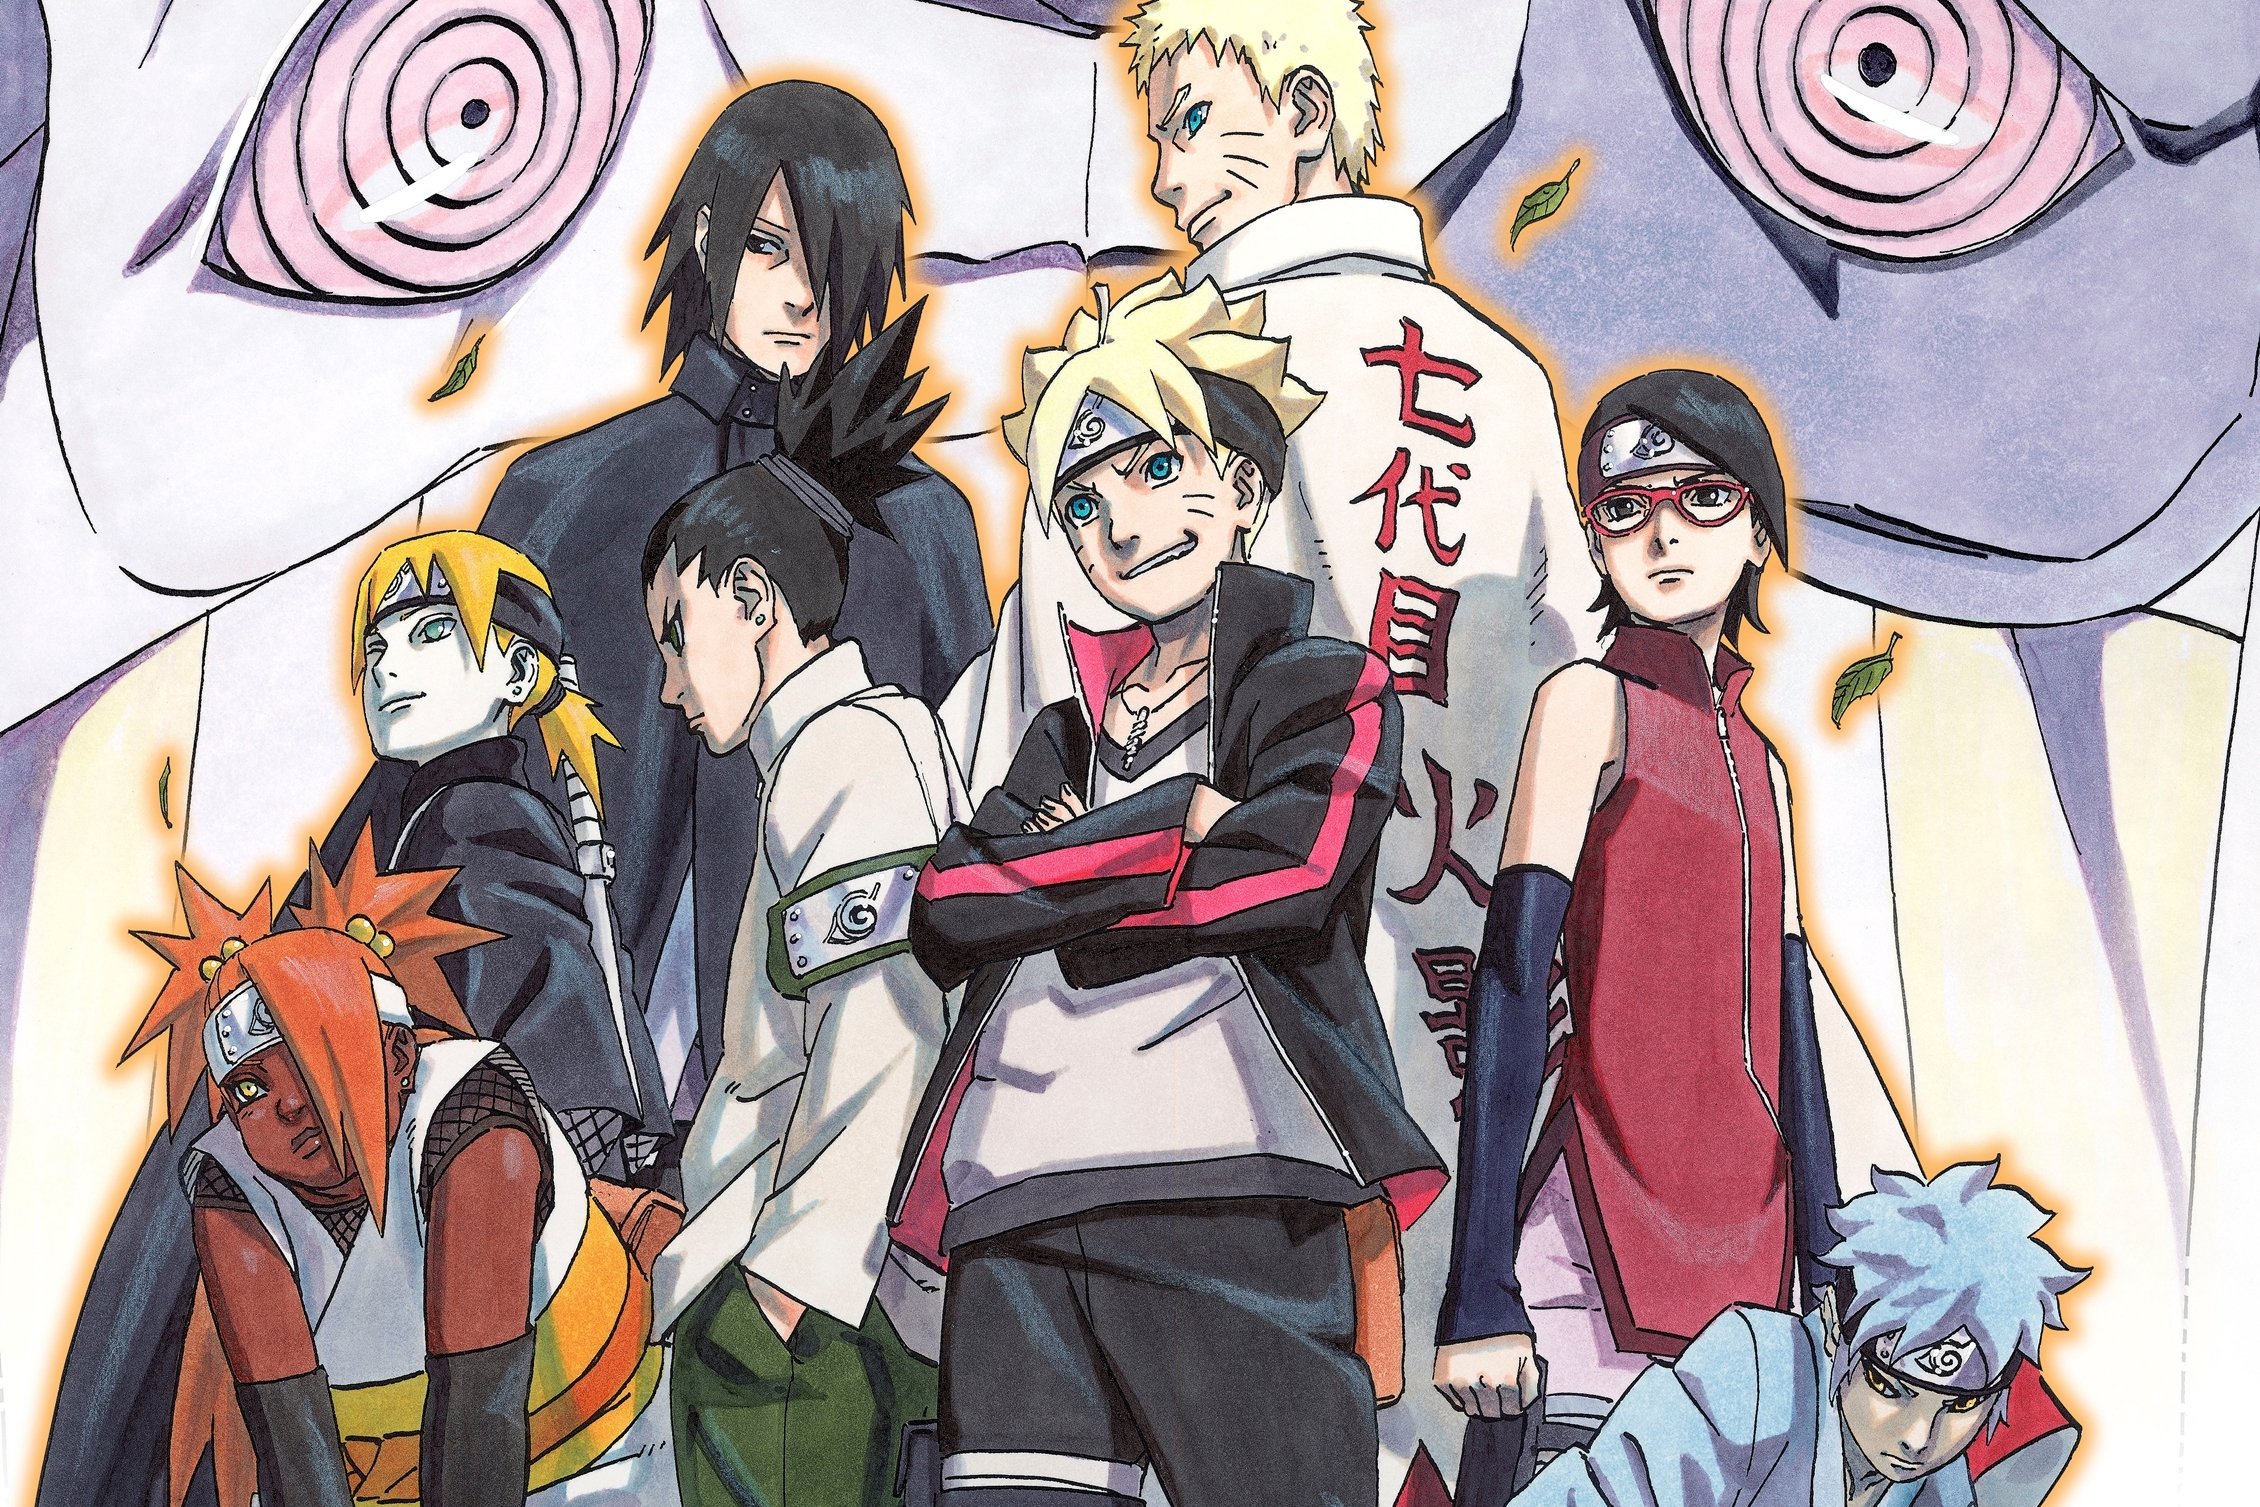 Arte imagina como seria Naruto e Sasuke jovens com o estilo de Boruto